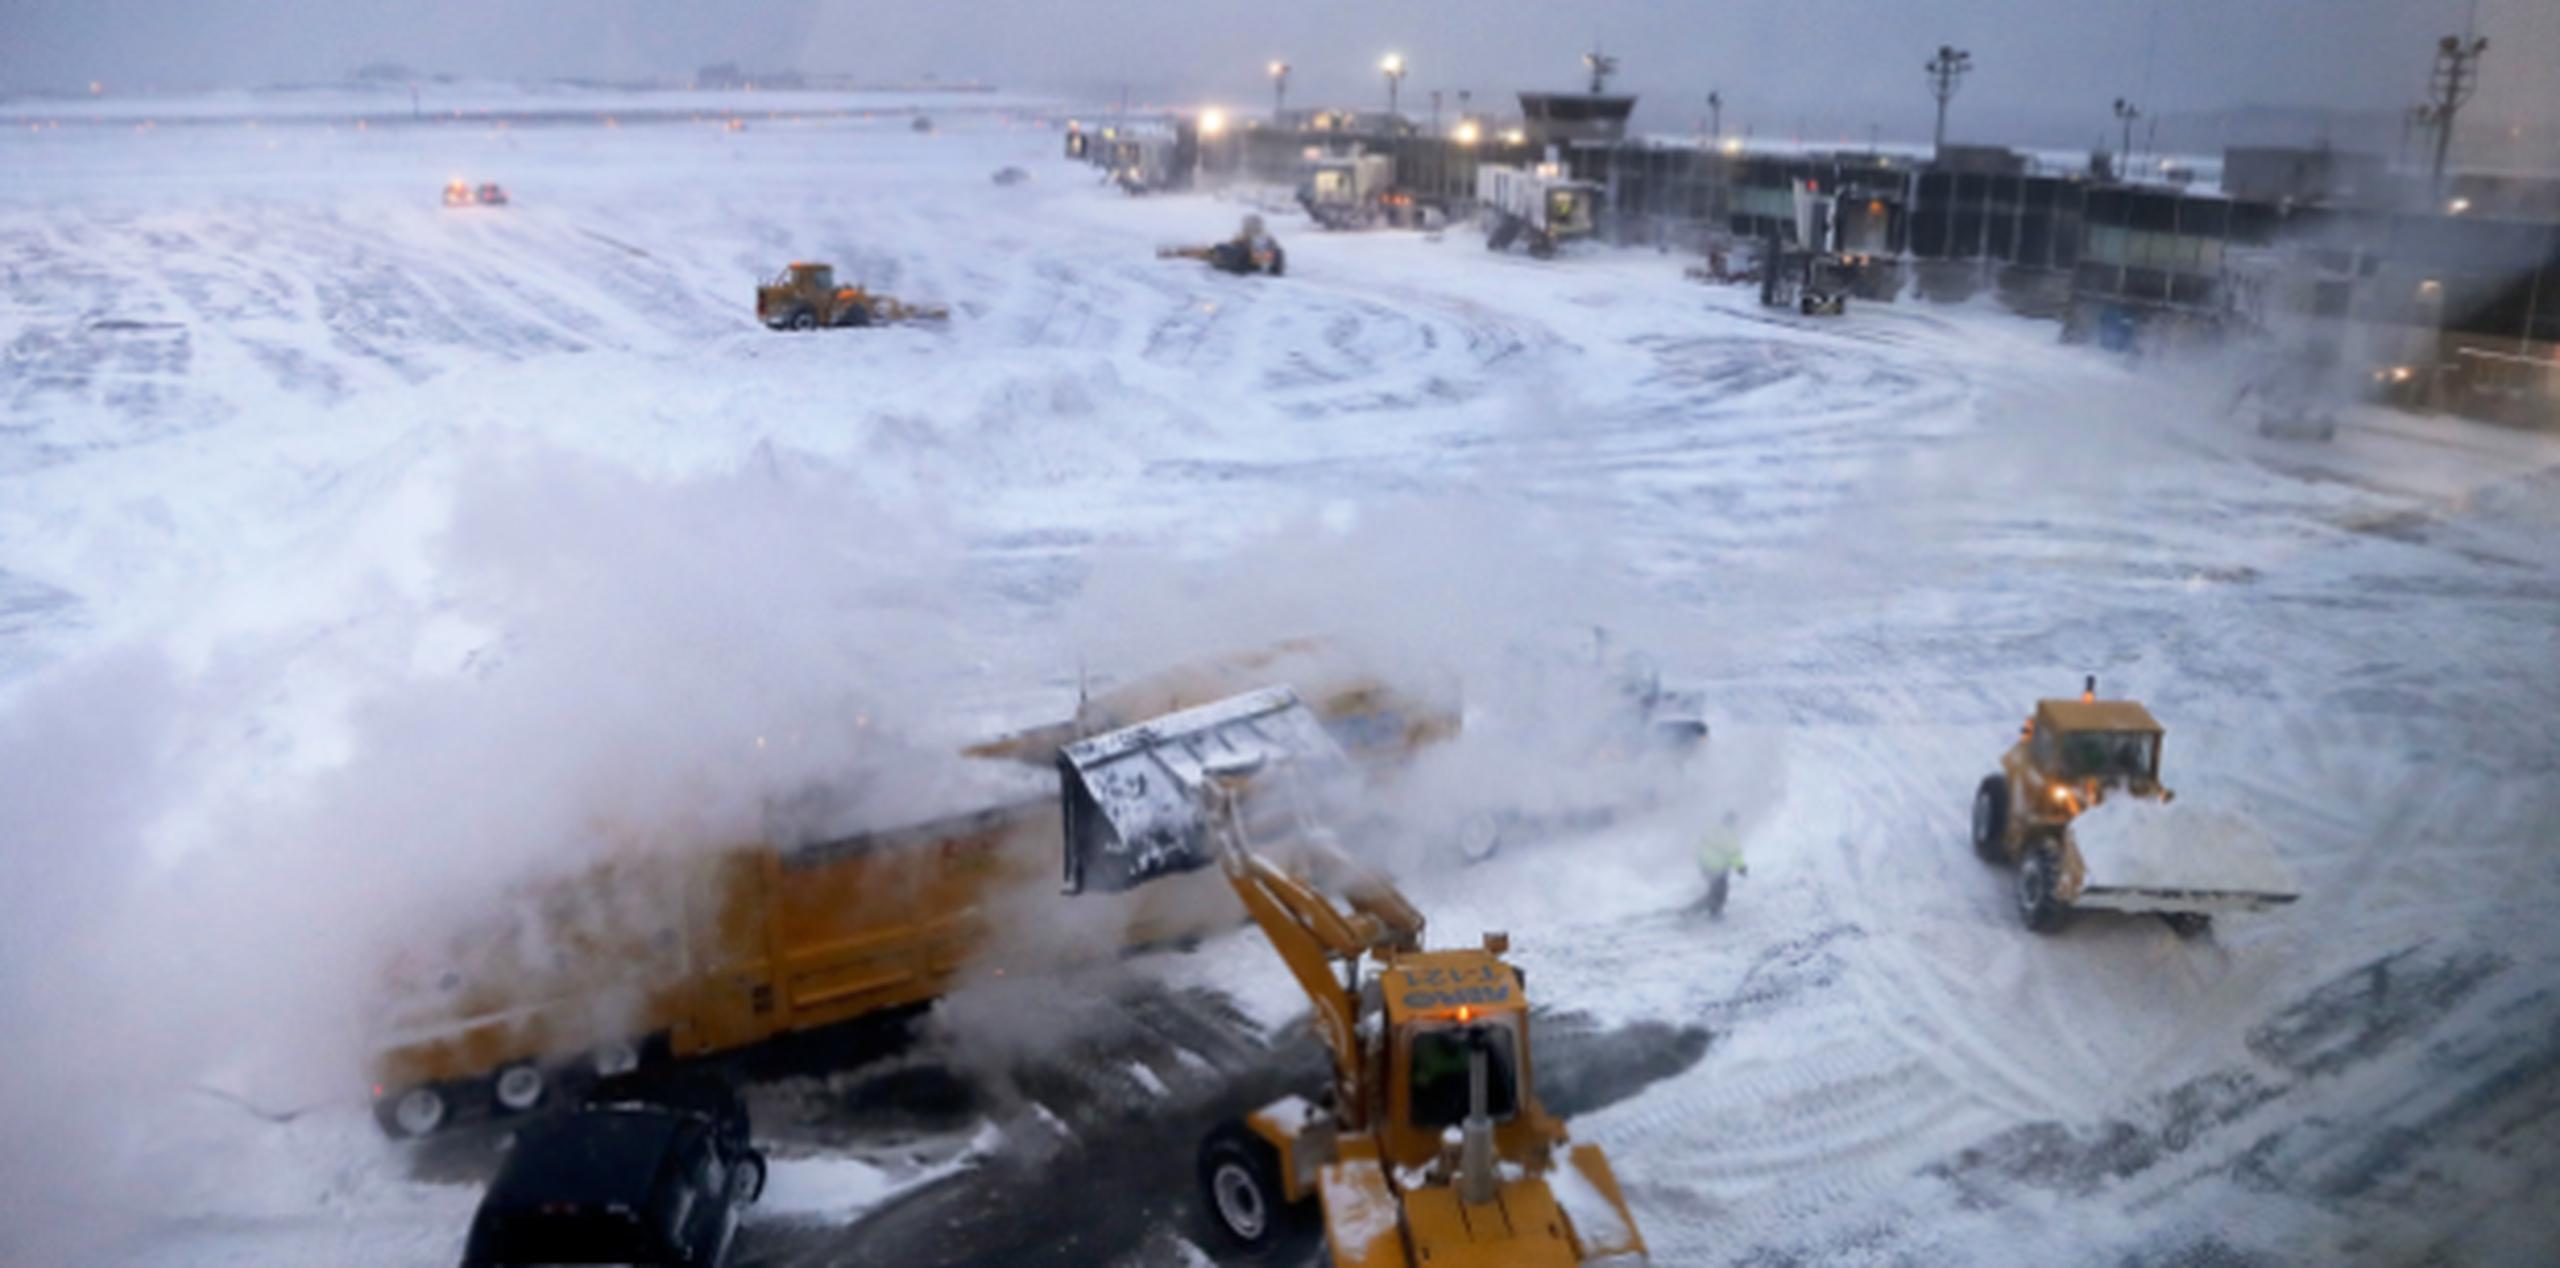 Así lucía ayer por la tarde el aeropuerto de La Guardia,  en Nueva York, por las fuertes nevadas que han afectado granes partes de Estados Unidos. (AP)